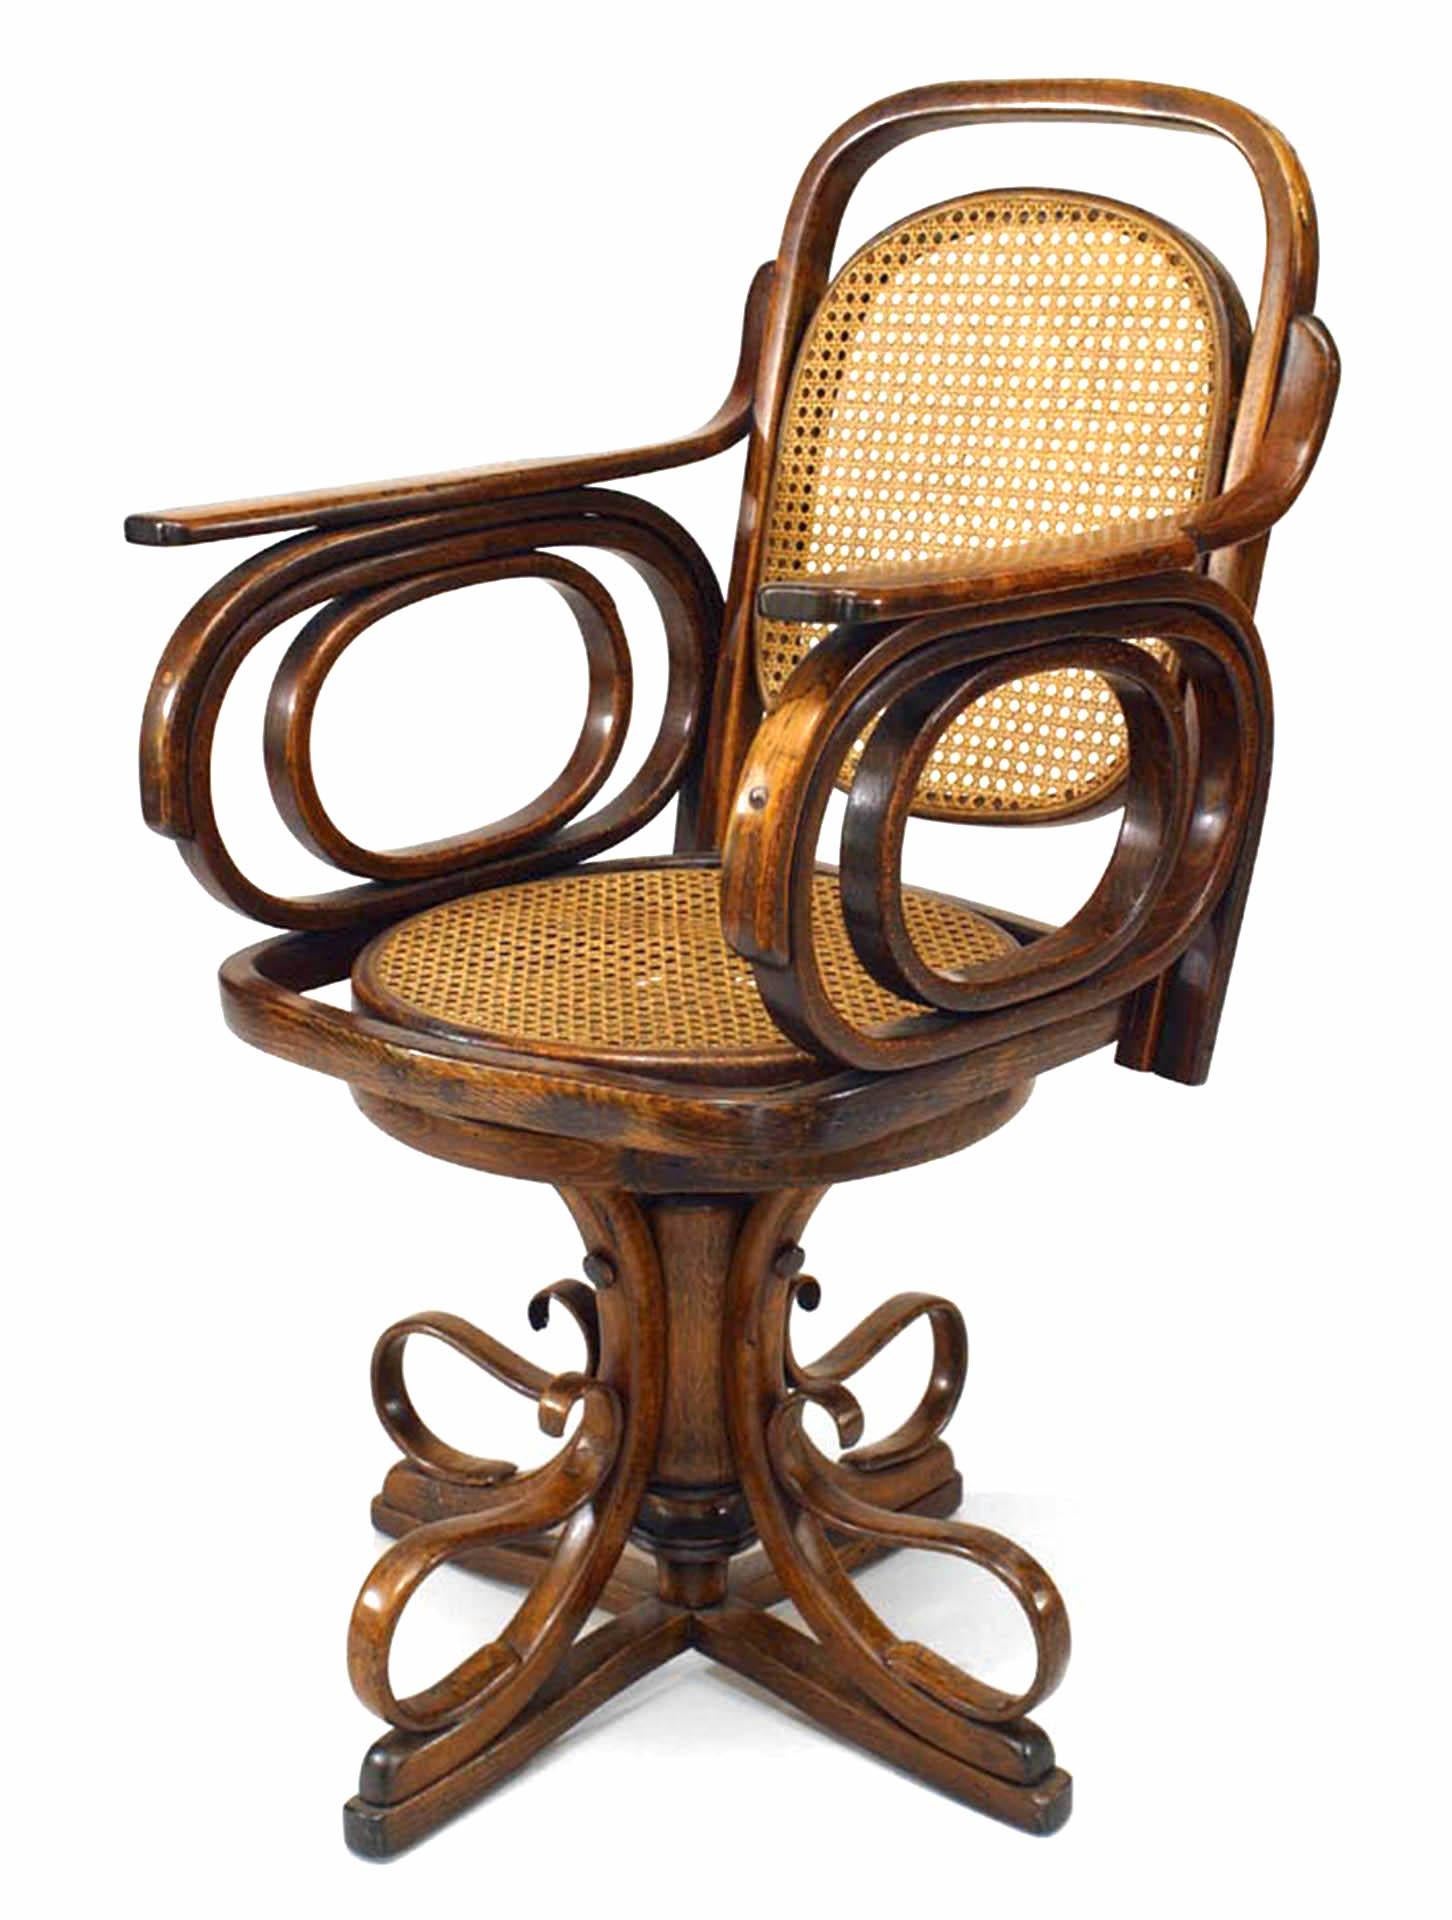 Chaise pivotante en bois de Bentwood autrichien (19/20e siècle) avec base à piédestal à volutes et assise et dossier cannelés à bras ouverts ovales. (att : THONET)
